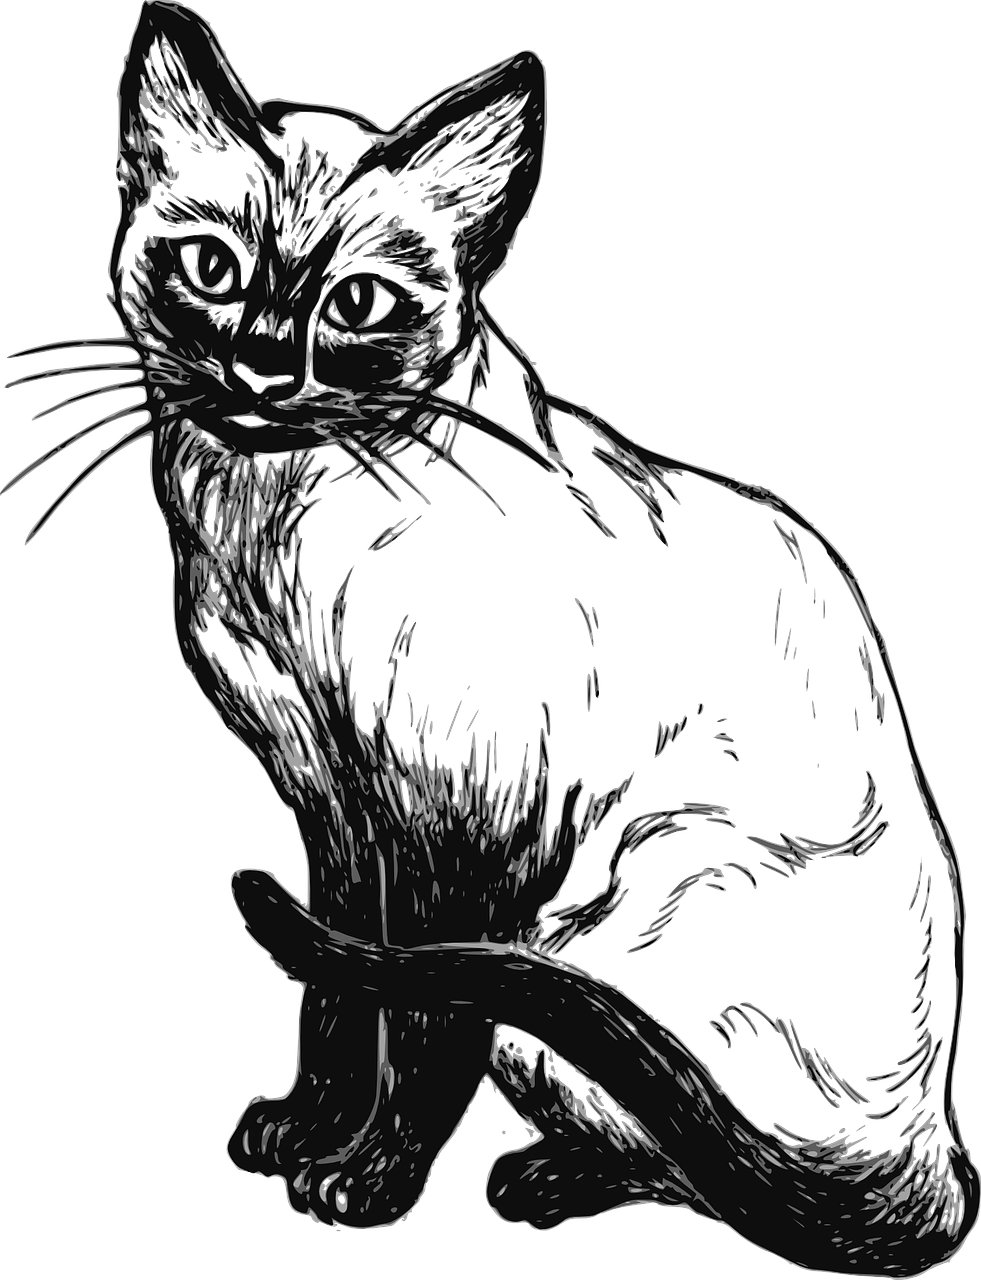 Disegno da colorare di gatto siamese realistico